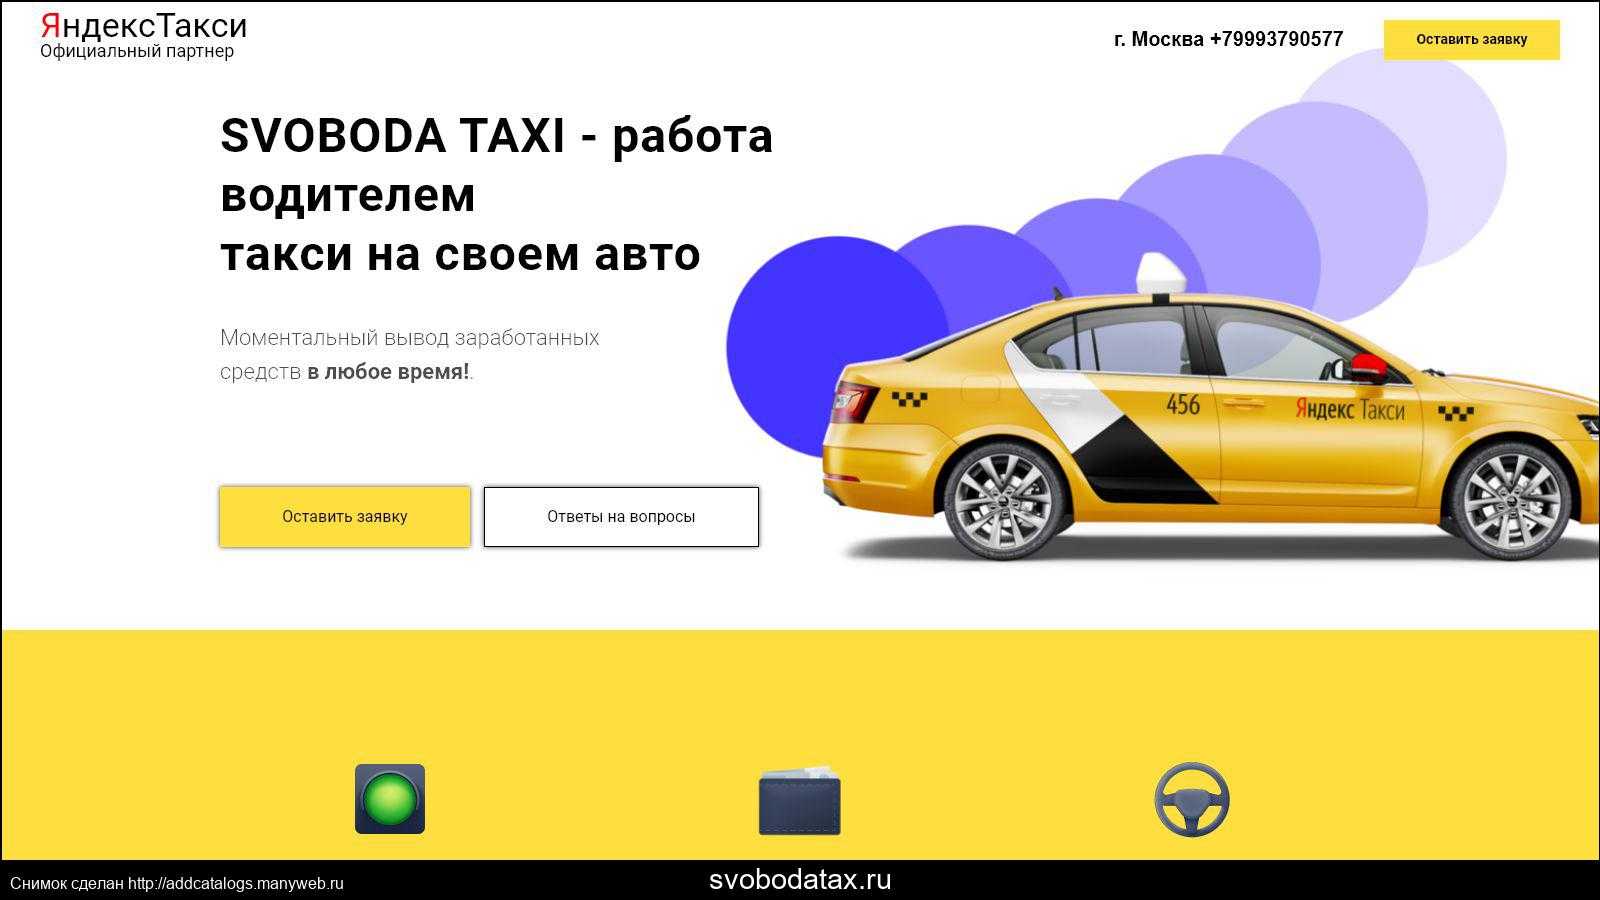 fleet taxi yandex ru